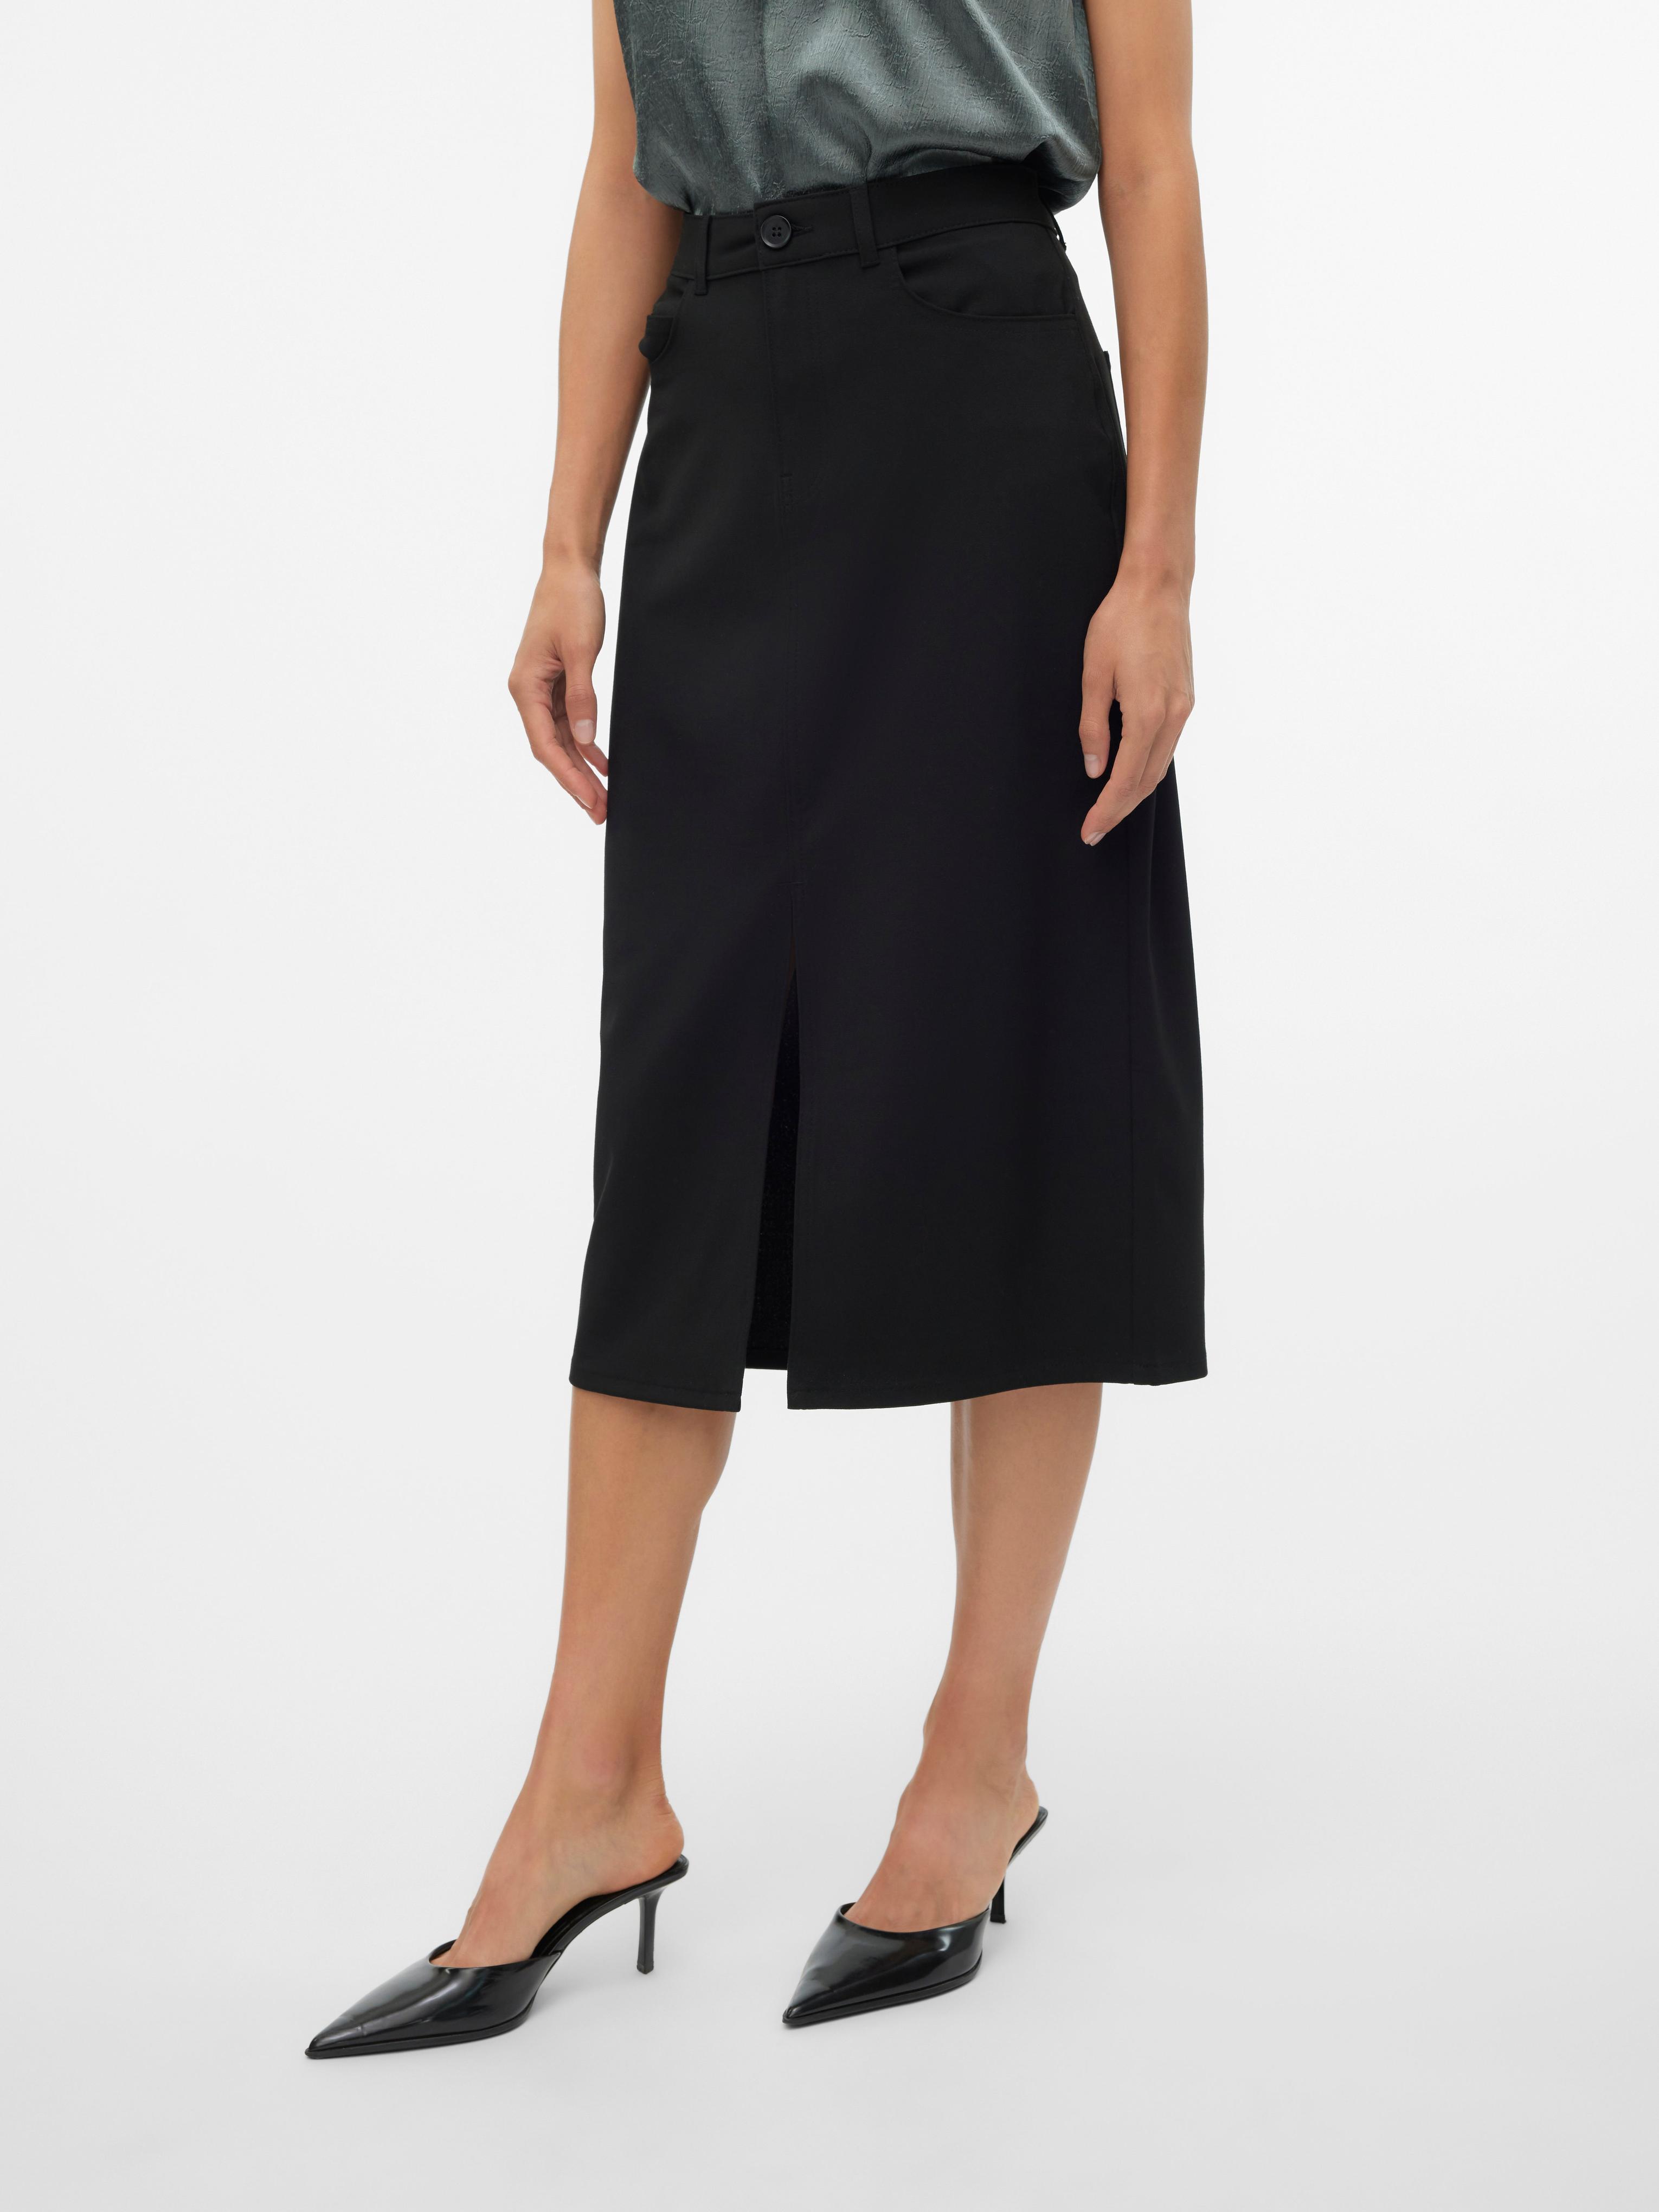 VMSASIE Lang nederdel på tilbud til 299,95 kr. hos Vero Moda